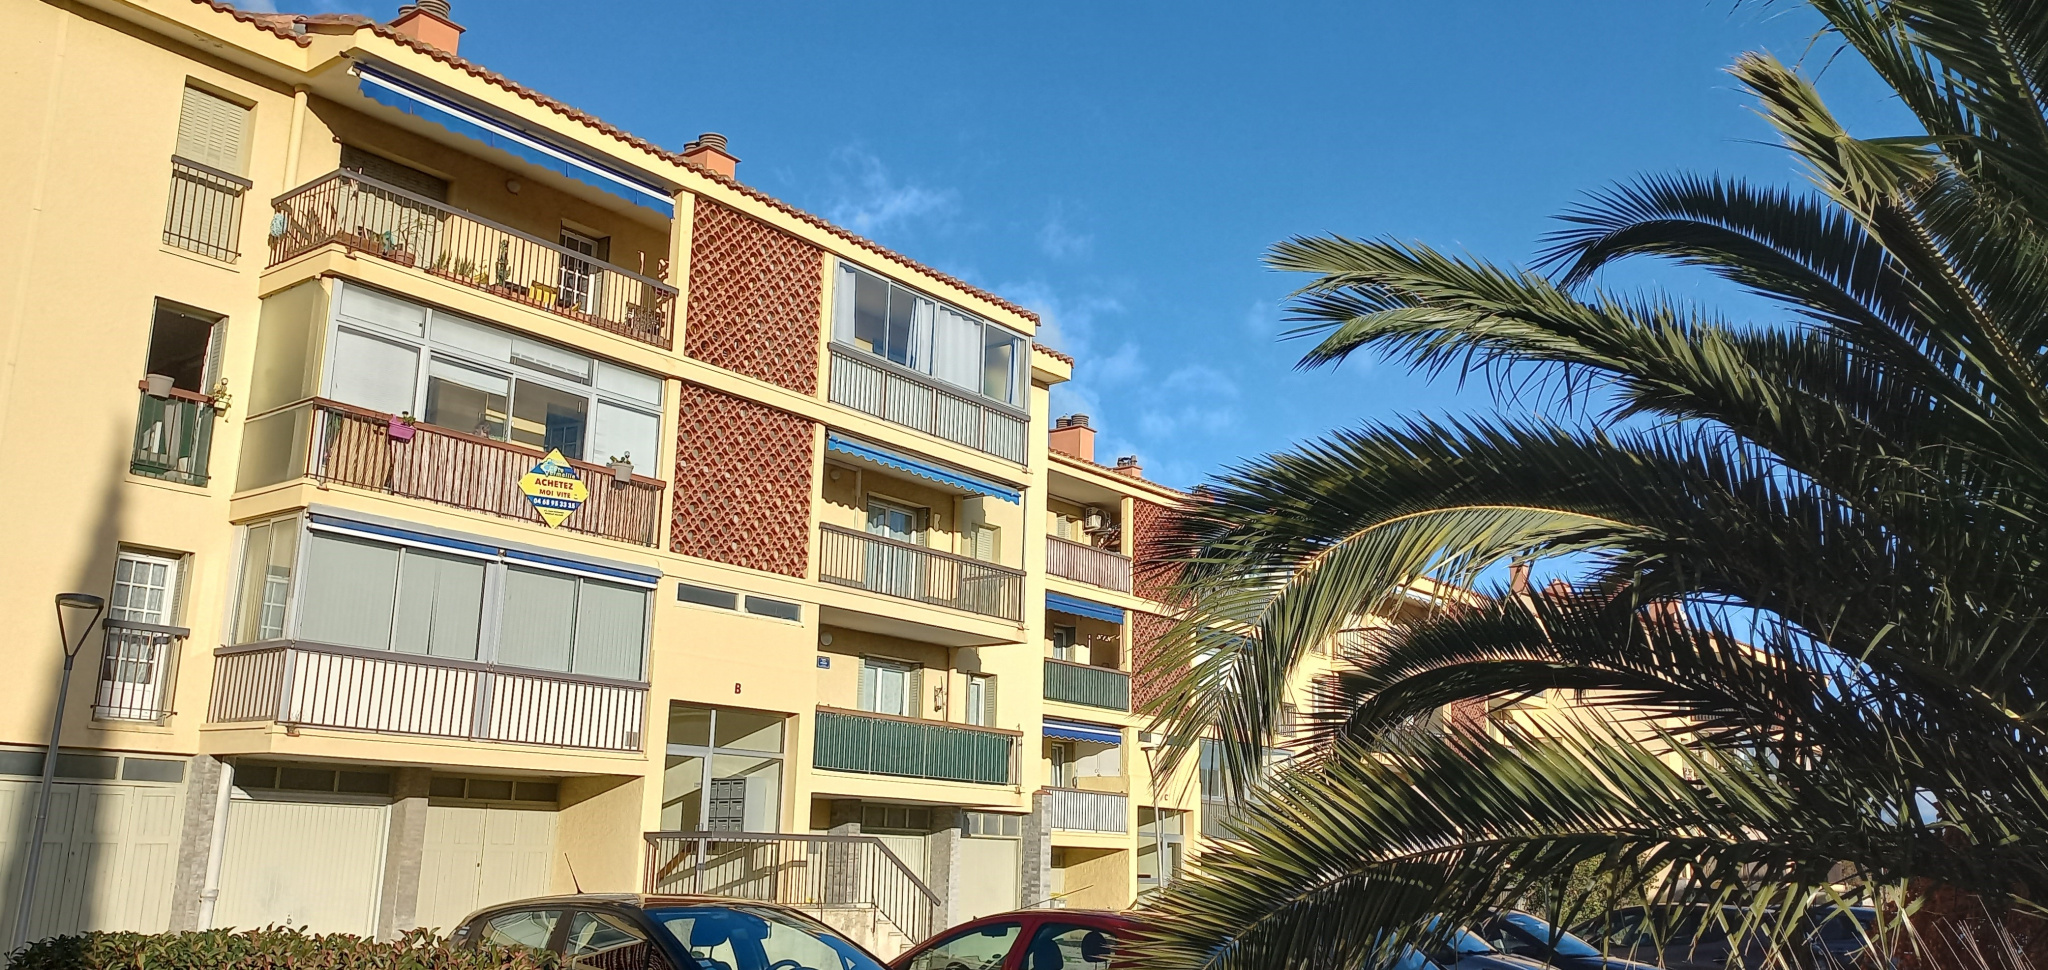 À vendre appartement de 52m2 à argelès-sur-mer (66700) - Photo 1'